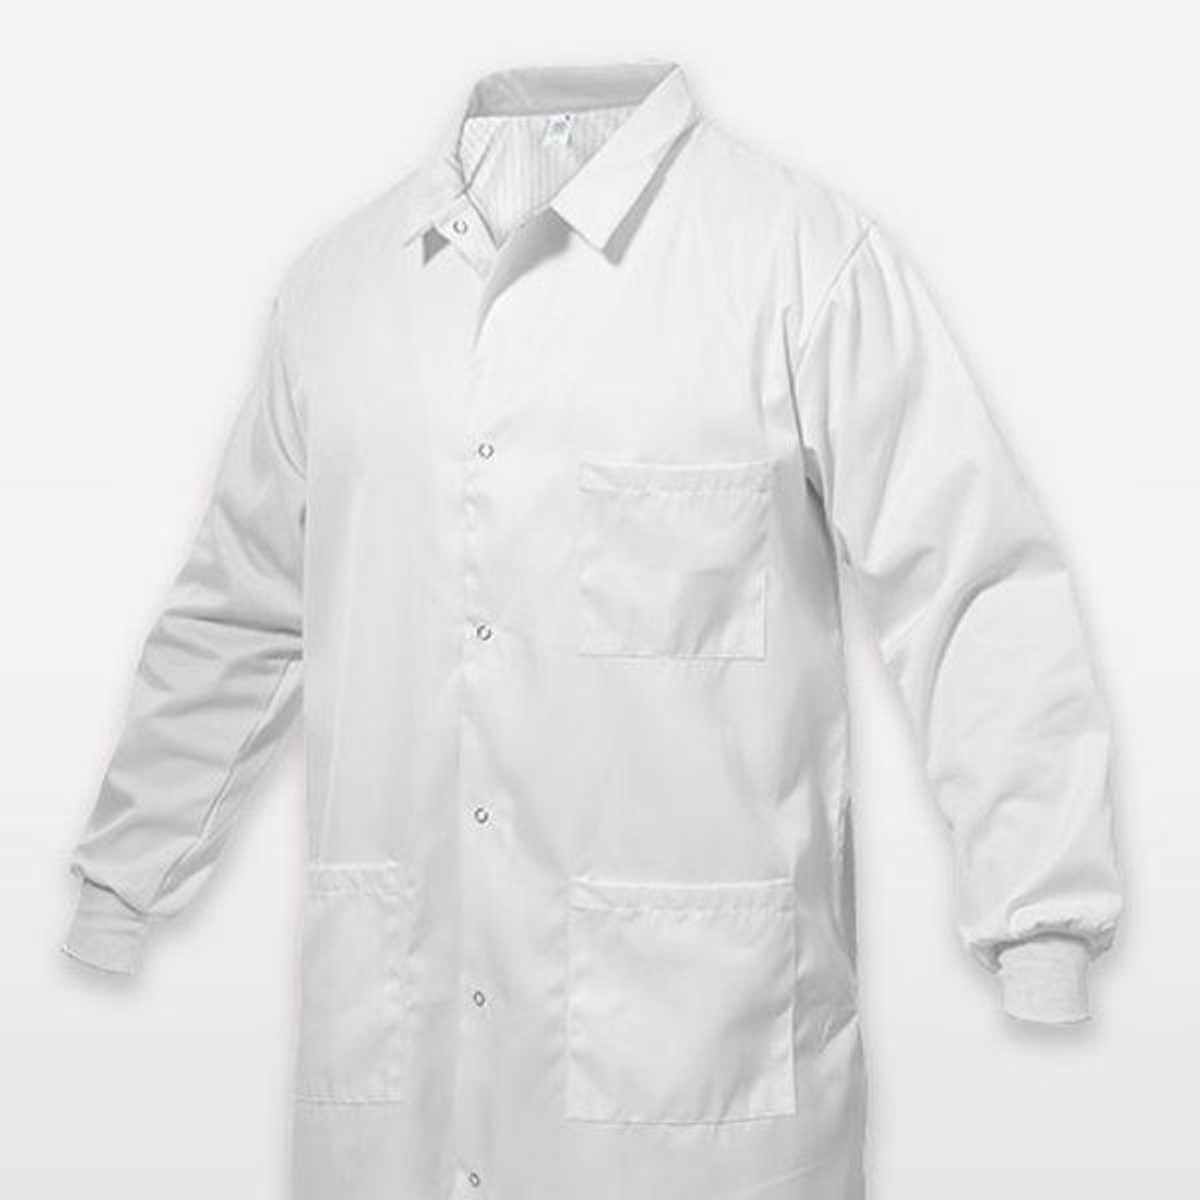 Standard Textile ComPel Lab Coat (3XL) for Sale